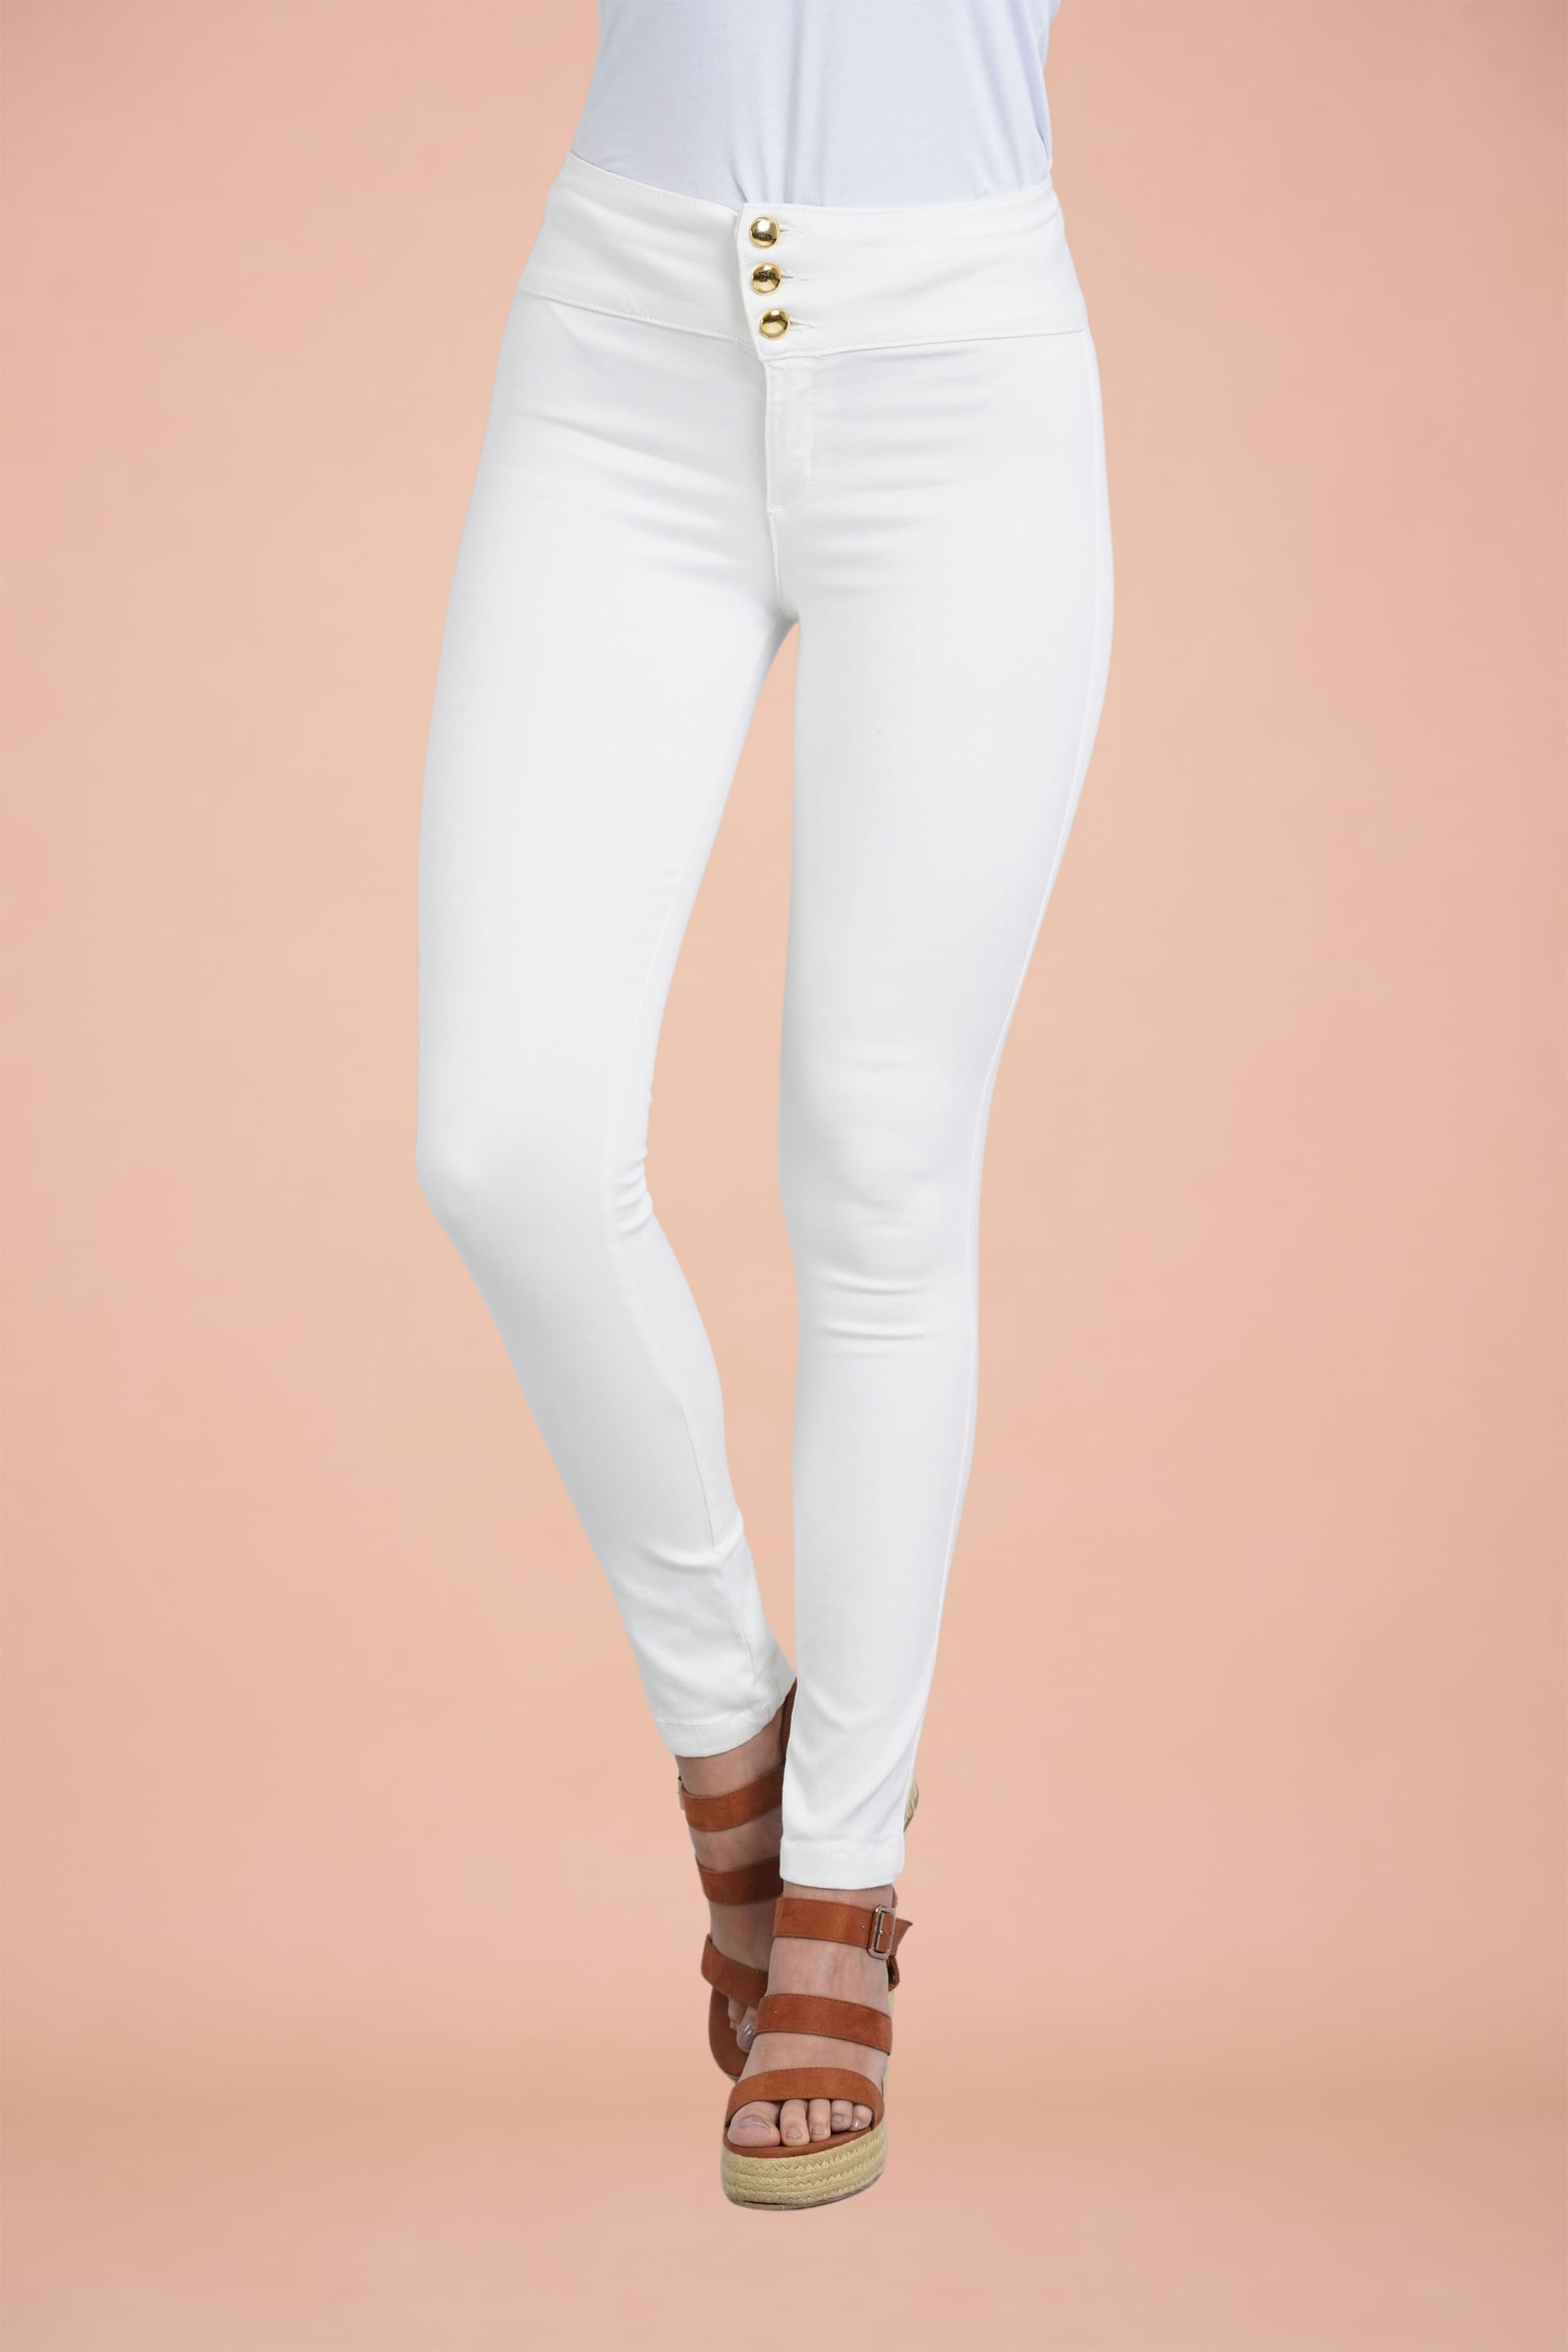 Enjuiciar sitio Abundancia Compra Pantalon para Mujer Color Blanco en www.surtitodo.com.co -  surtitodoMobile